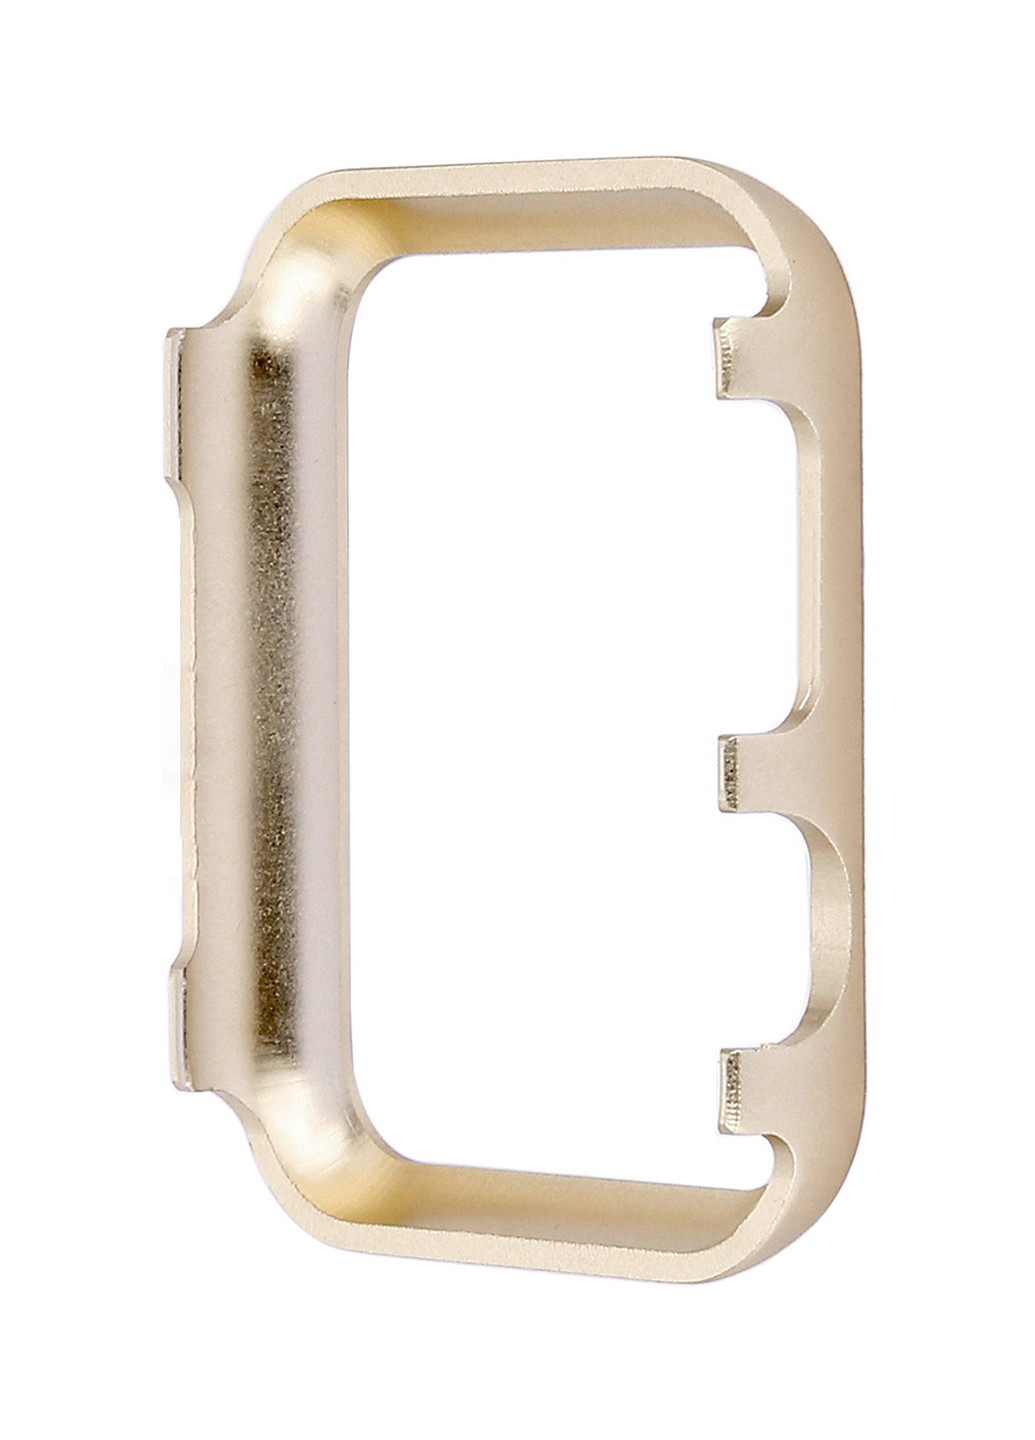 Накладка для часов со стразами Apple Watch 38/40 Aluminium Diamond Gold XoKo накладка для часов со стразами apple watch 38/40 xoko aluminium diamond gold (143704650)